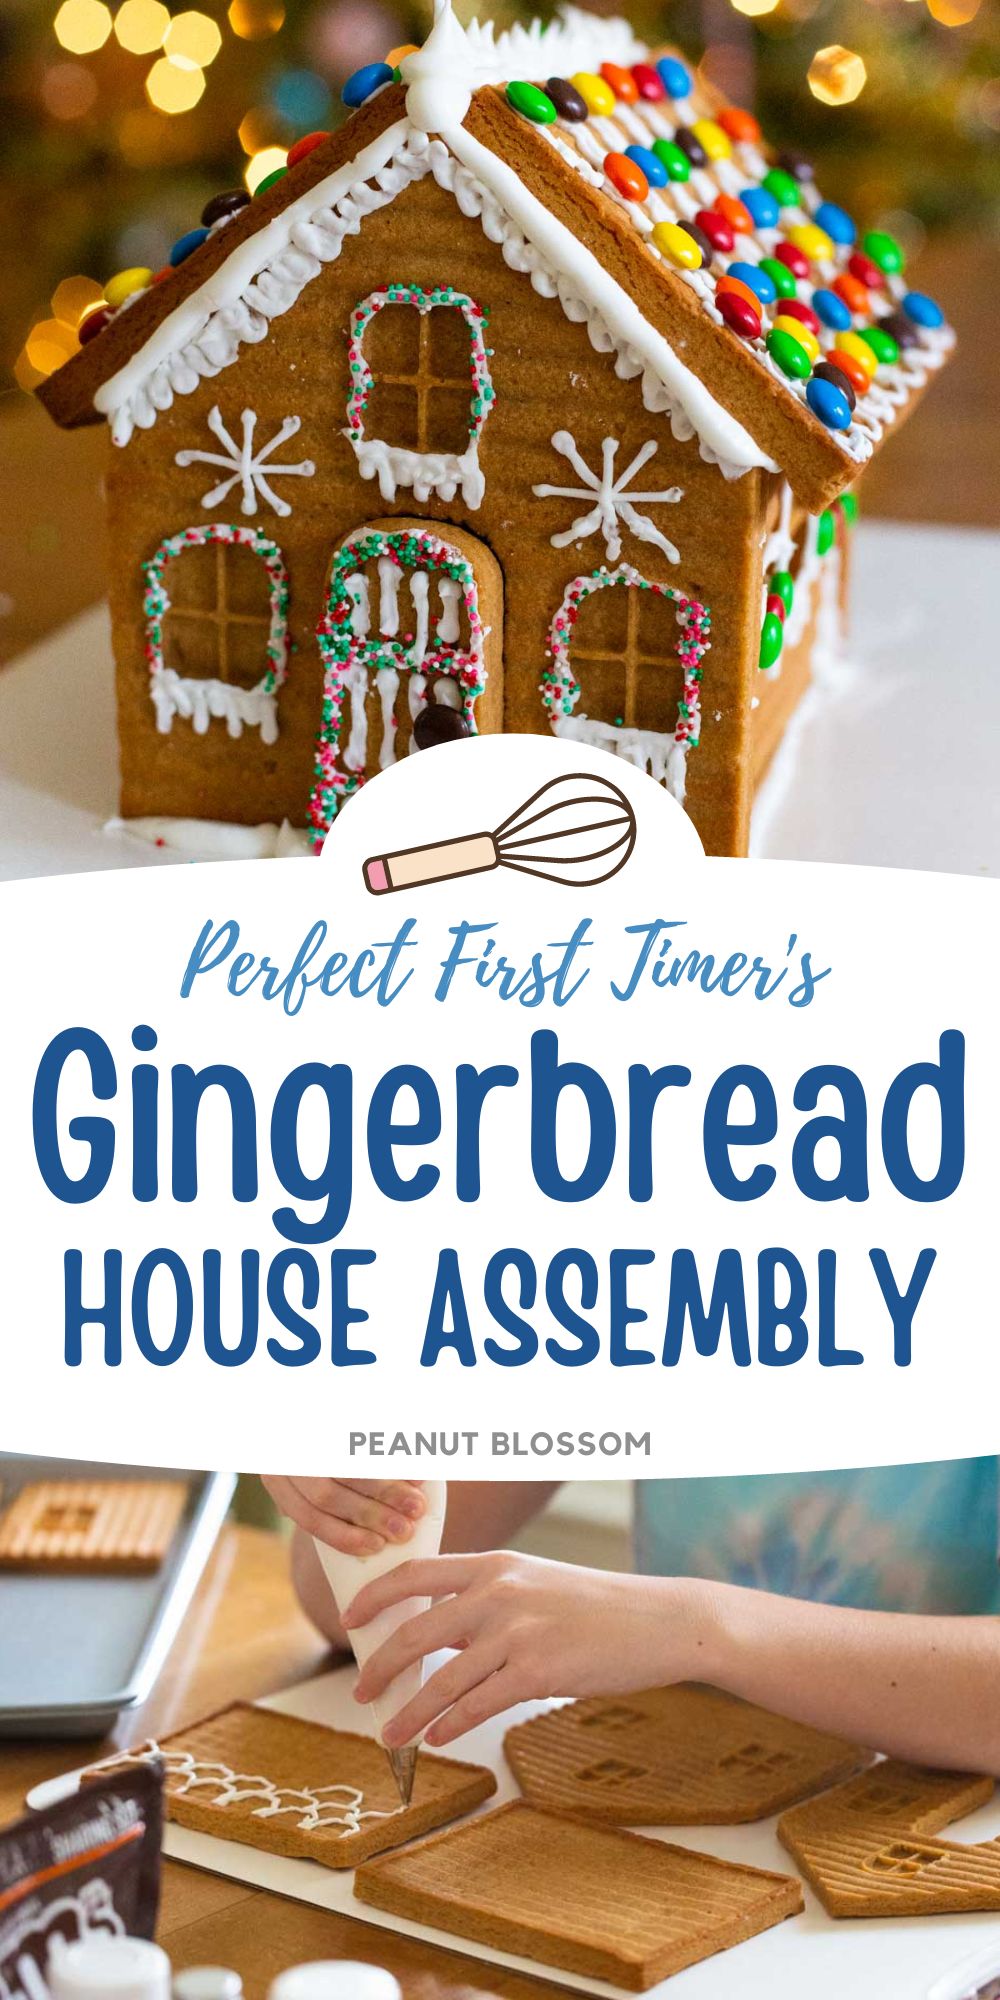 How to Make a Homemade Gingerbread House - Peanut Blossom